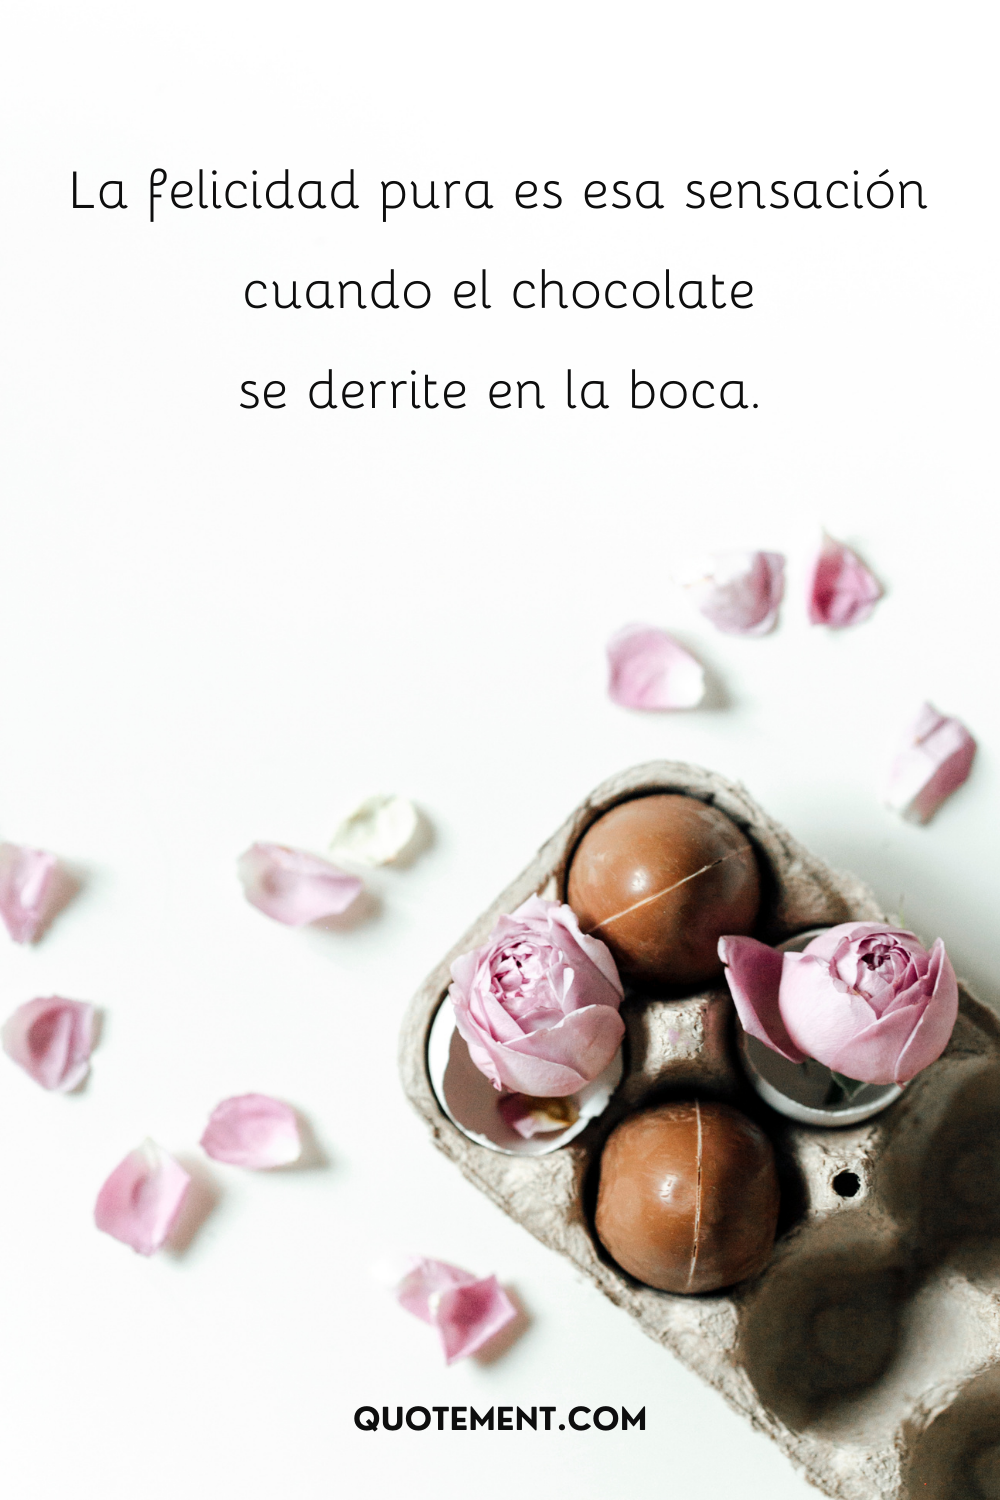 La felicidad pura es esa sensación cuando el chocolate se derrite en la boca.